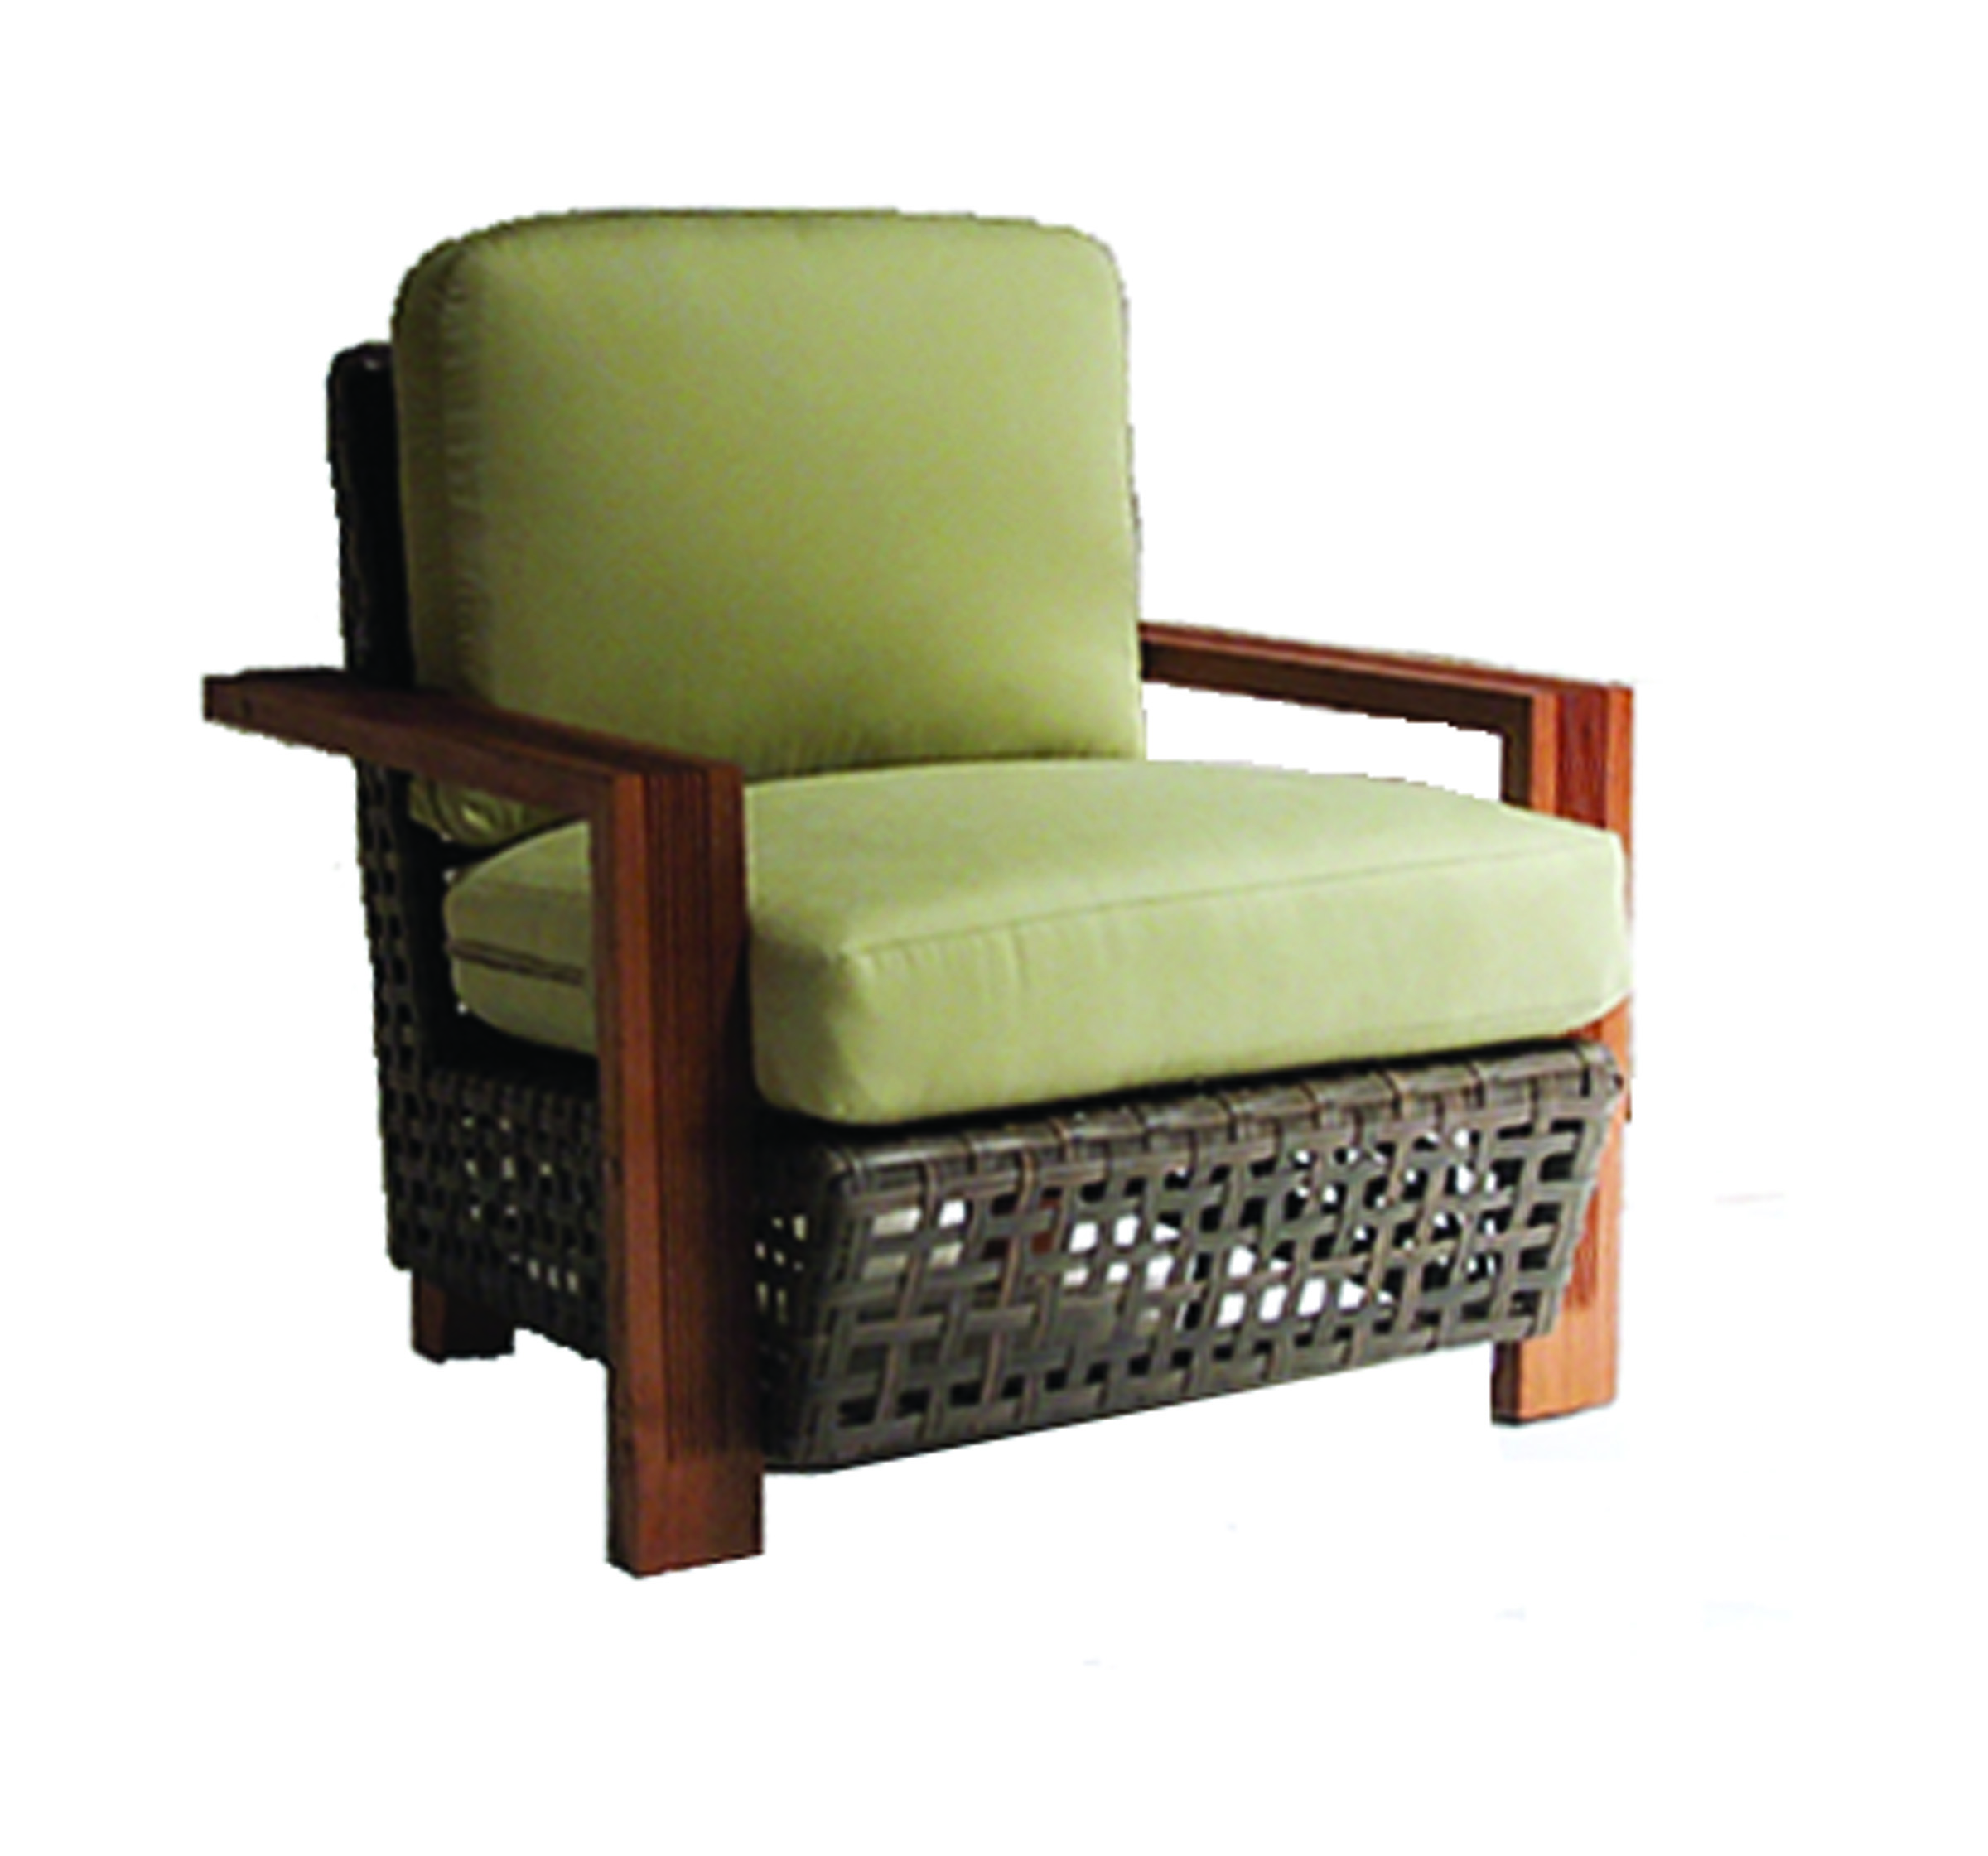 FB-3250-A Checkmark Lounge Chair